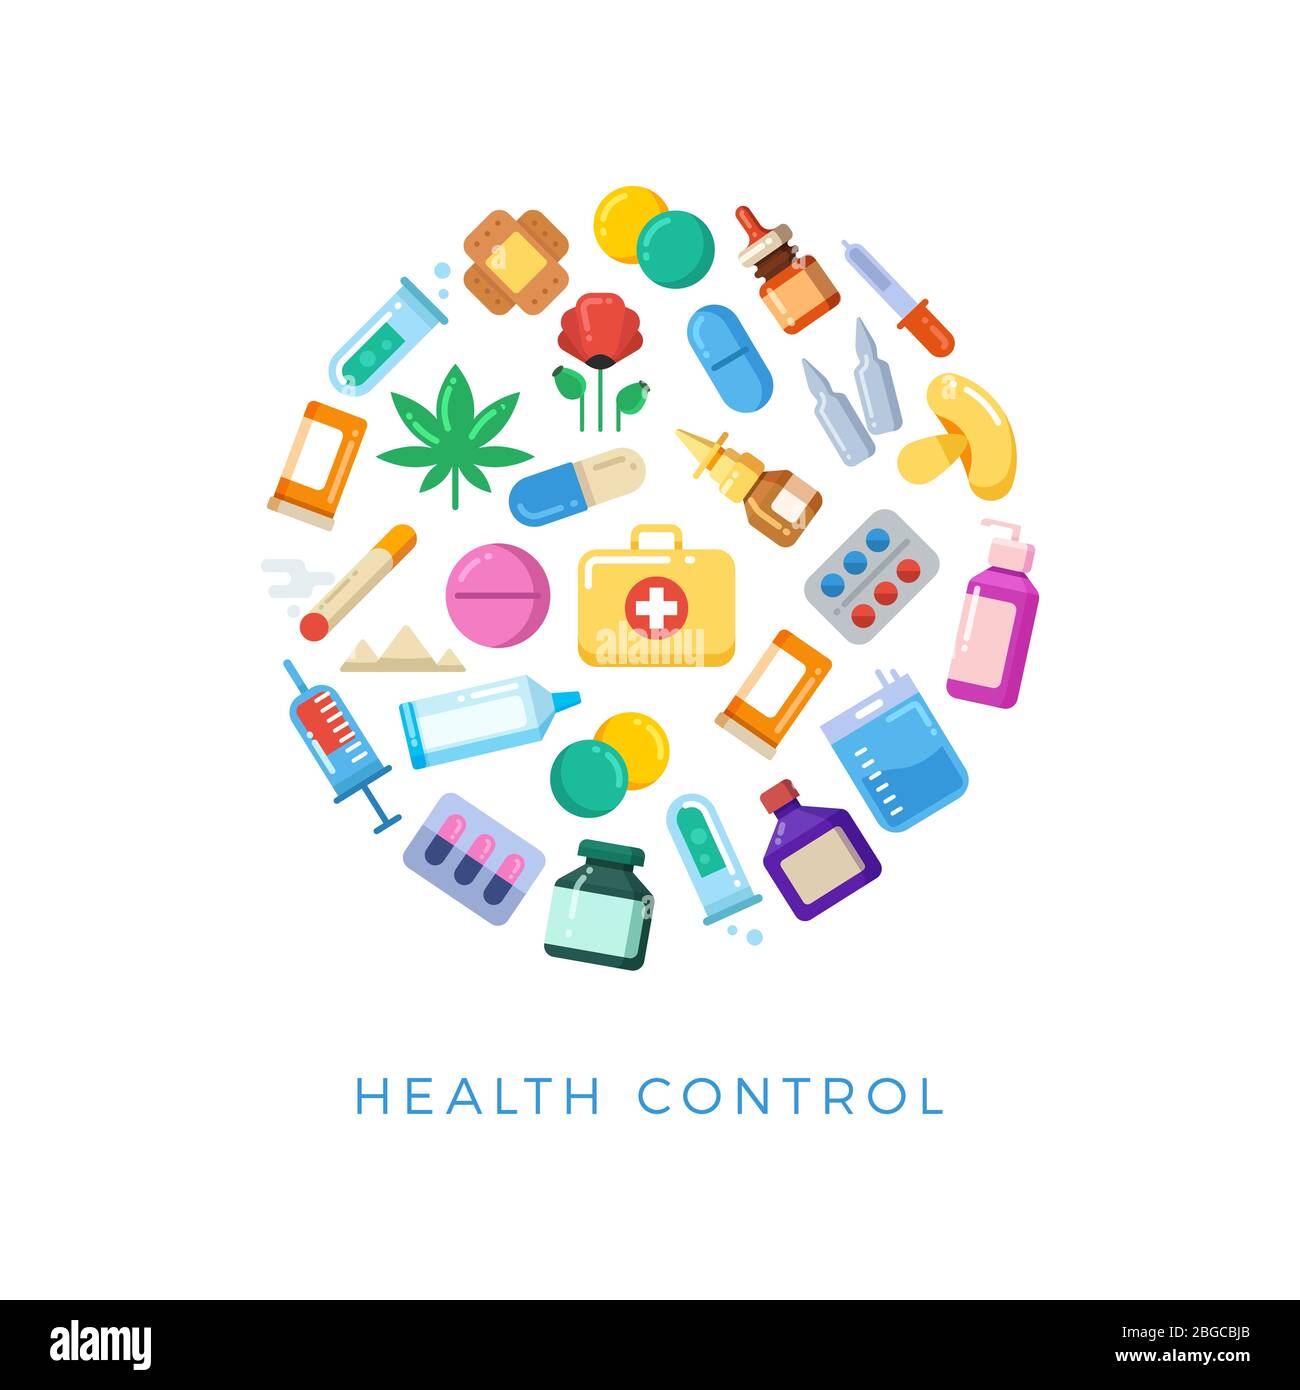 Medizinische Gesundheit Kontrolle rund Konzept - Bright Pillen Flaschen Medikamente Symbole. Medizinische Gesundheitskontrolle, Zigarette und Spritze, Mohn und Pilz, Marihuana-Droge. Vektorgrafik Stock Vektor